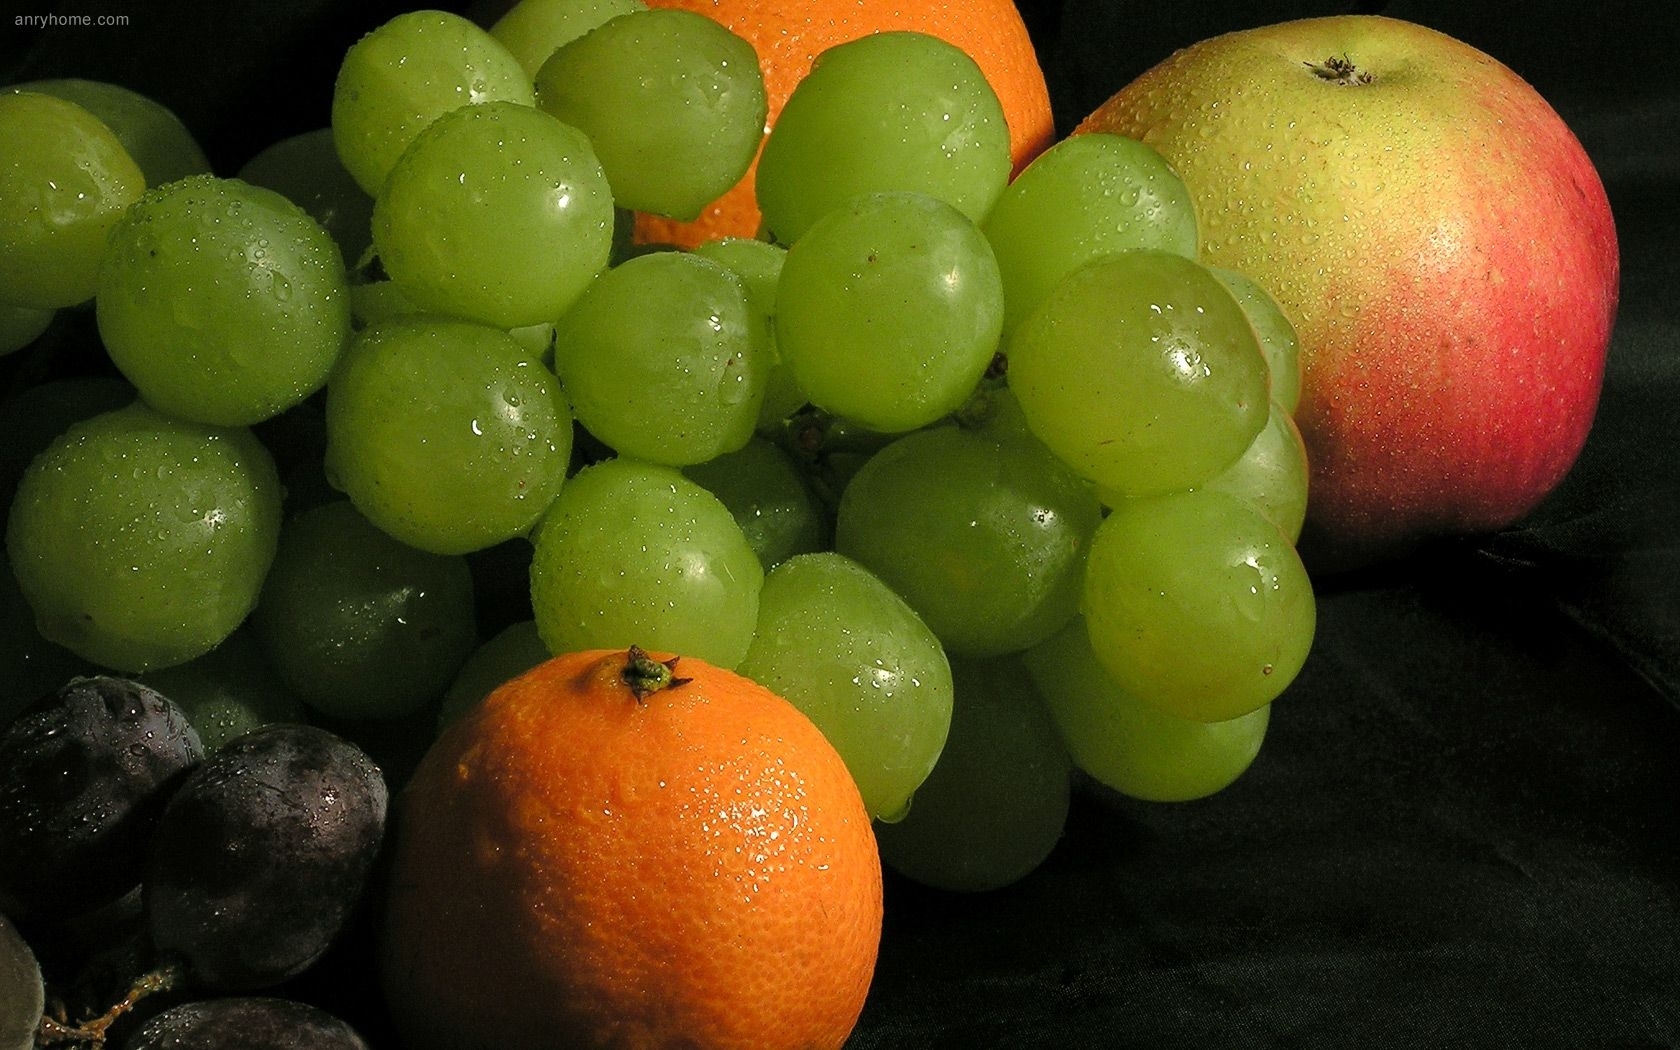 Скачать обои бесплатно Еда, Апельсины, Виноград, Фрукты картинка на рабочий стол ПК